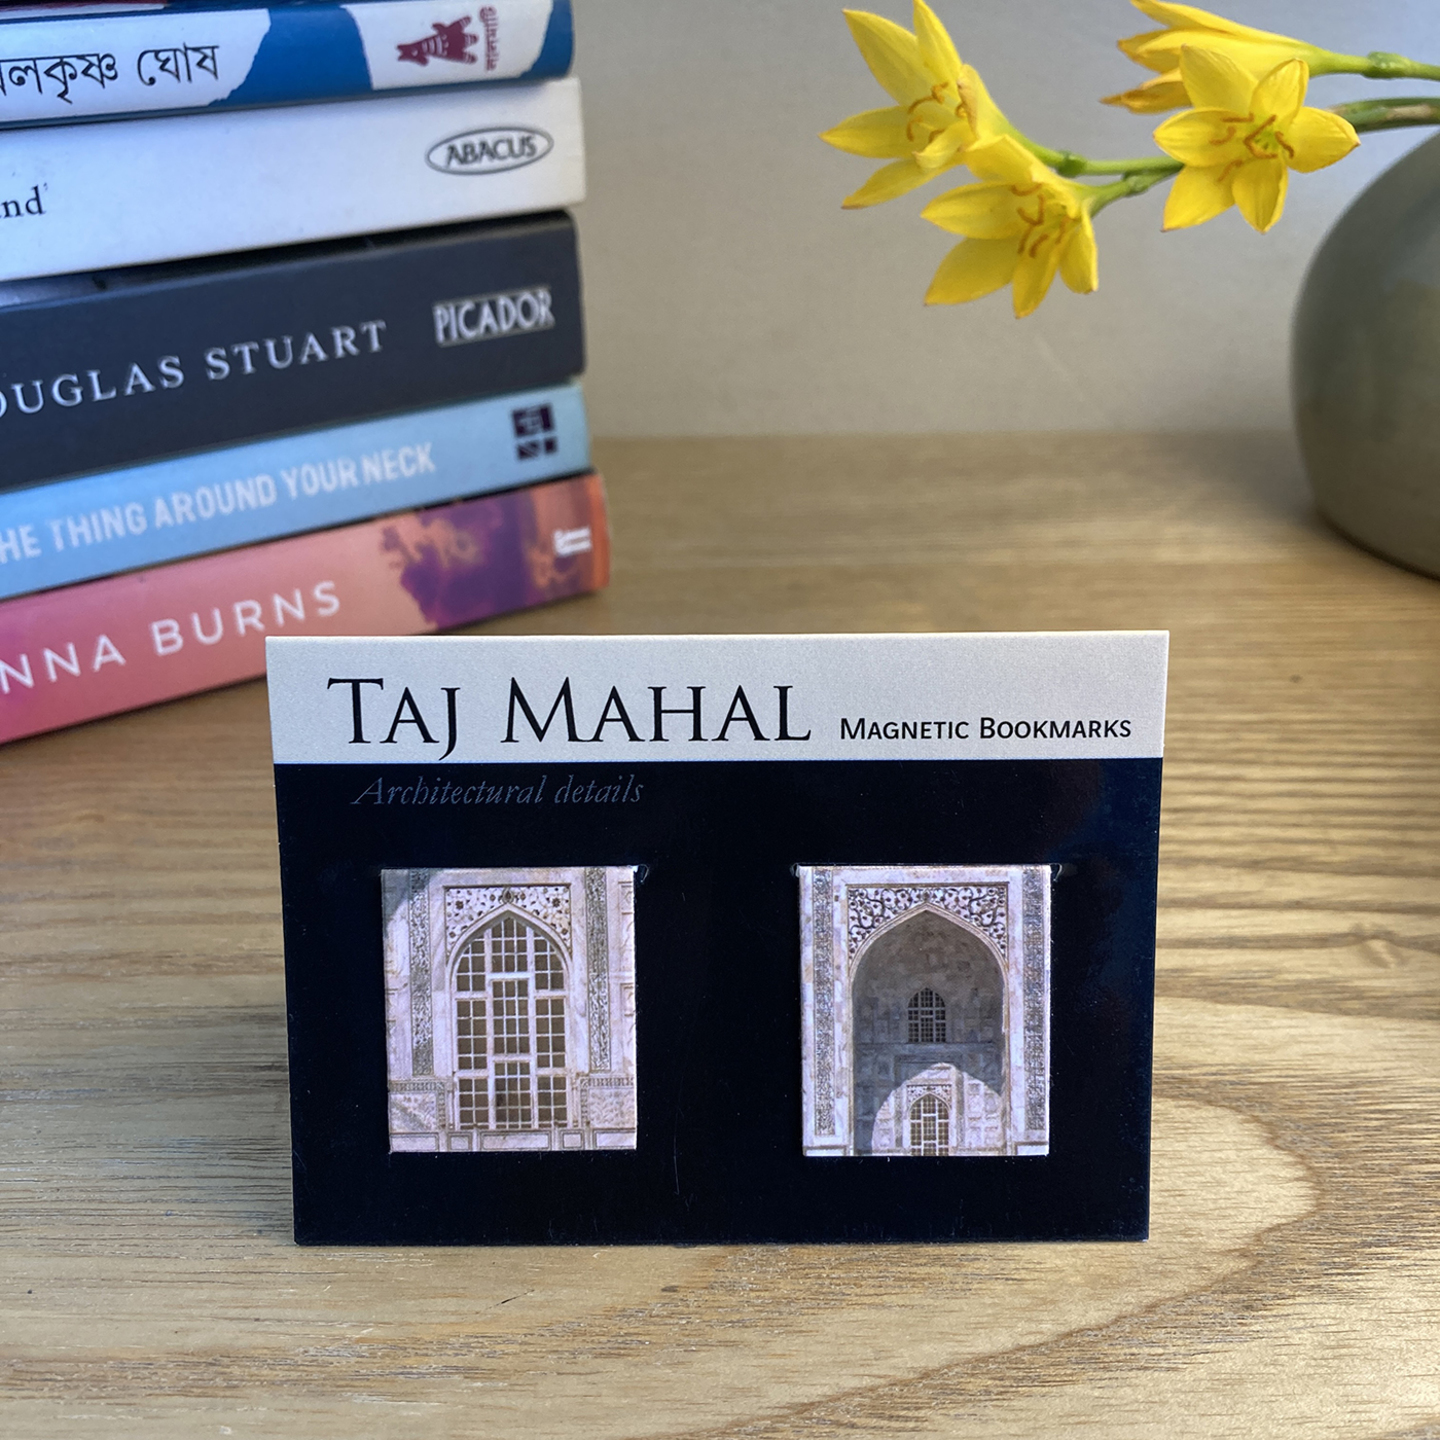 BOOK MARKS SET OF 2 - Taj Mahal Arches